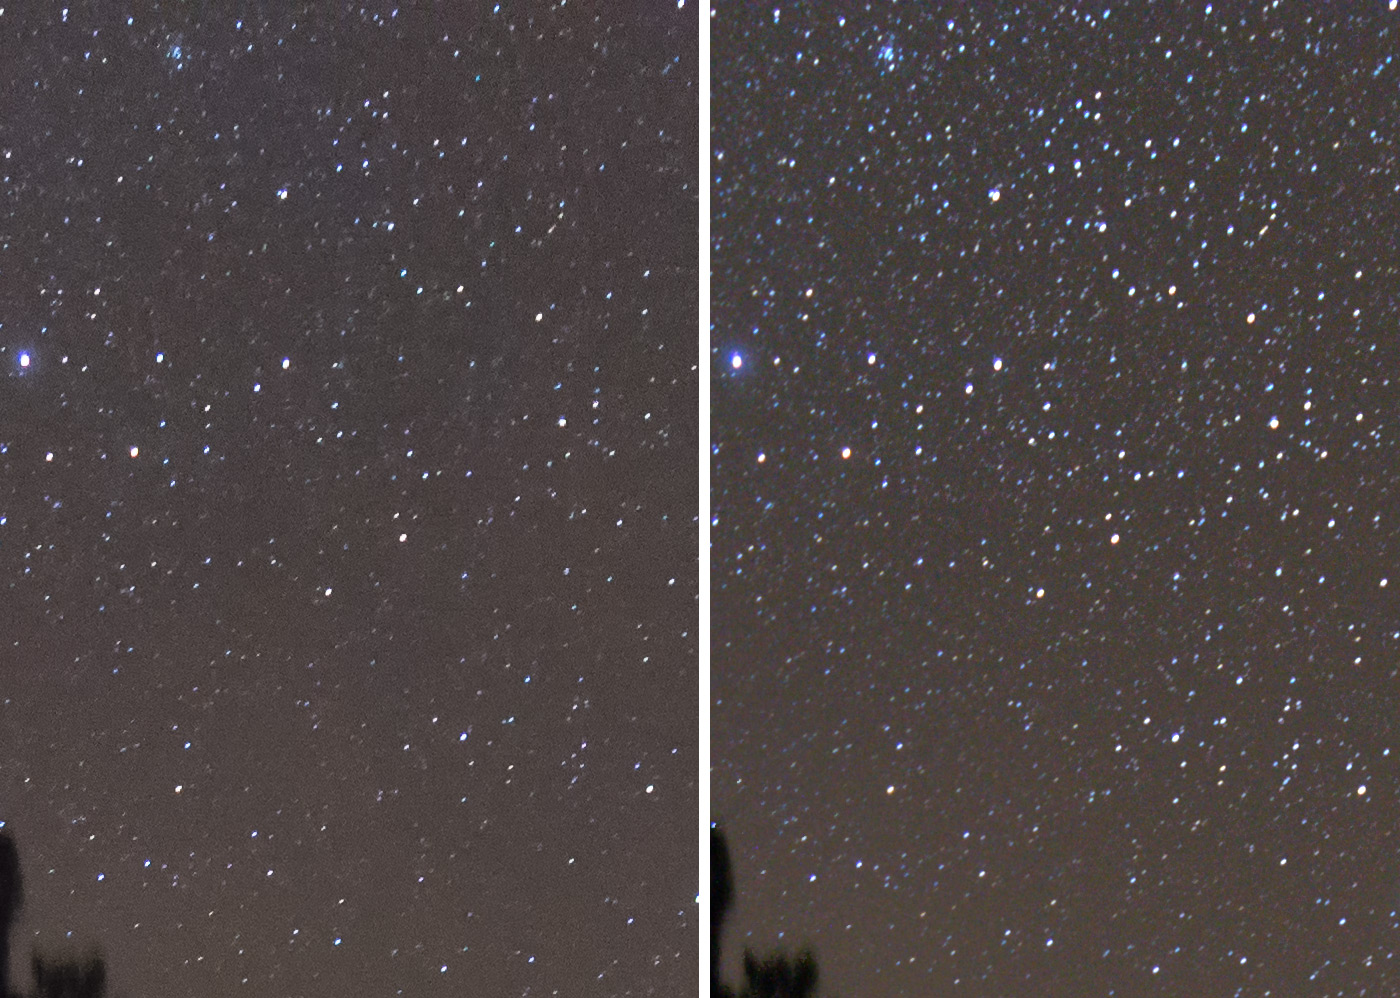 Фотография 13. Сравнение воздействия шумодава на звезды в масштабе 100%, слева – оригинальный кадр после плагина Dfine 2 из набора Nik Collection, справа - 10 кадров сшиты в Sequator. Видно, что слева количество звезд намного меньше. Камера Nikon D610 с объективом Nikon 18-35mm f/3.5-4.5G. 18 mm, ISO 3200, f/3.5, 20 s